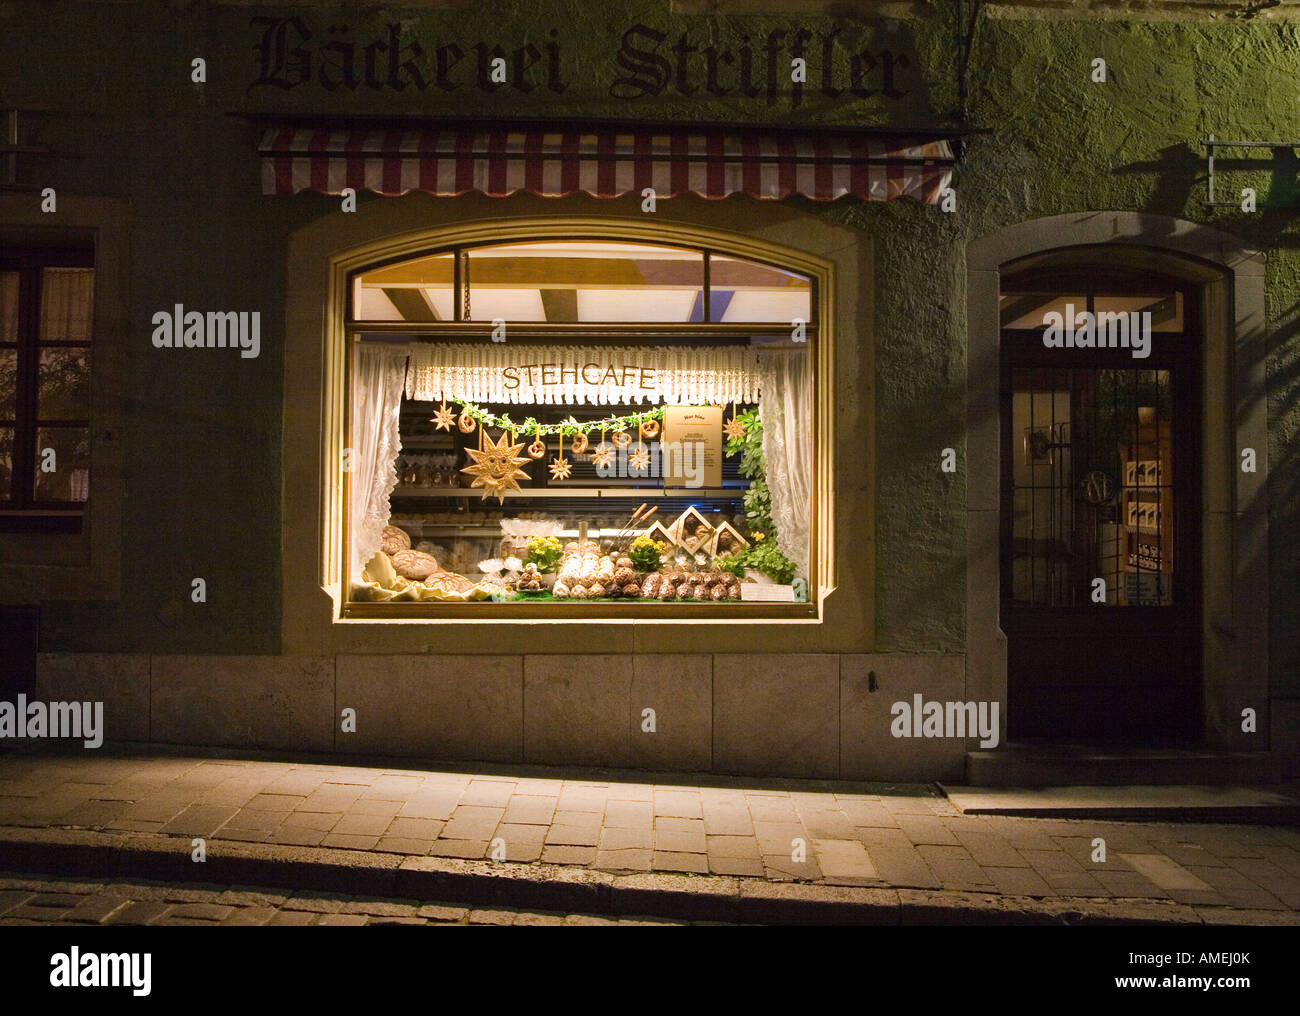 Cafe Shop Schaufenster mit Spezialität Brot bei Nacht Rothenburg Ob der Tauber Deutschland Stockfoto